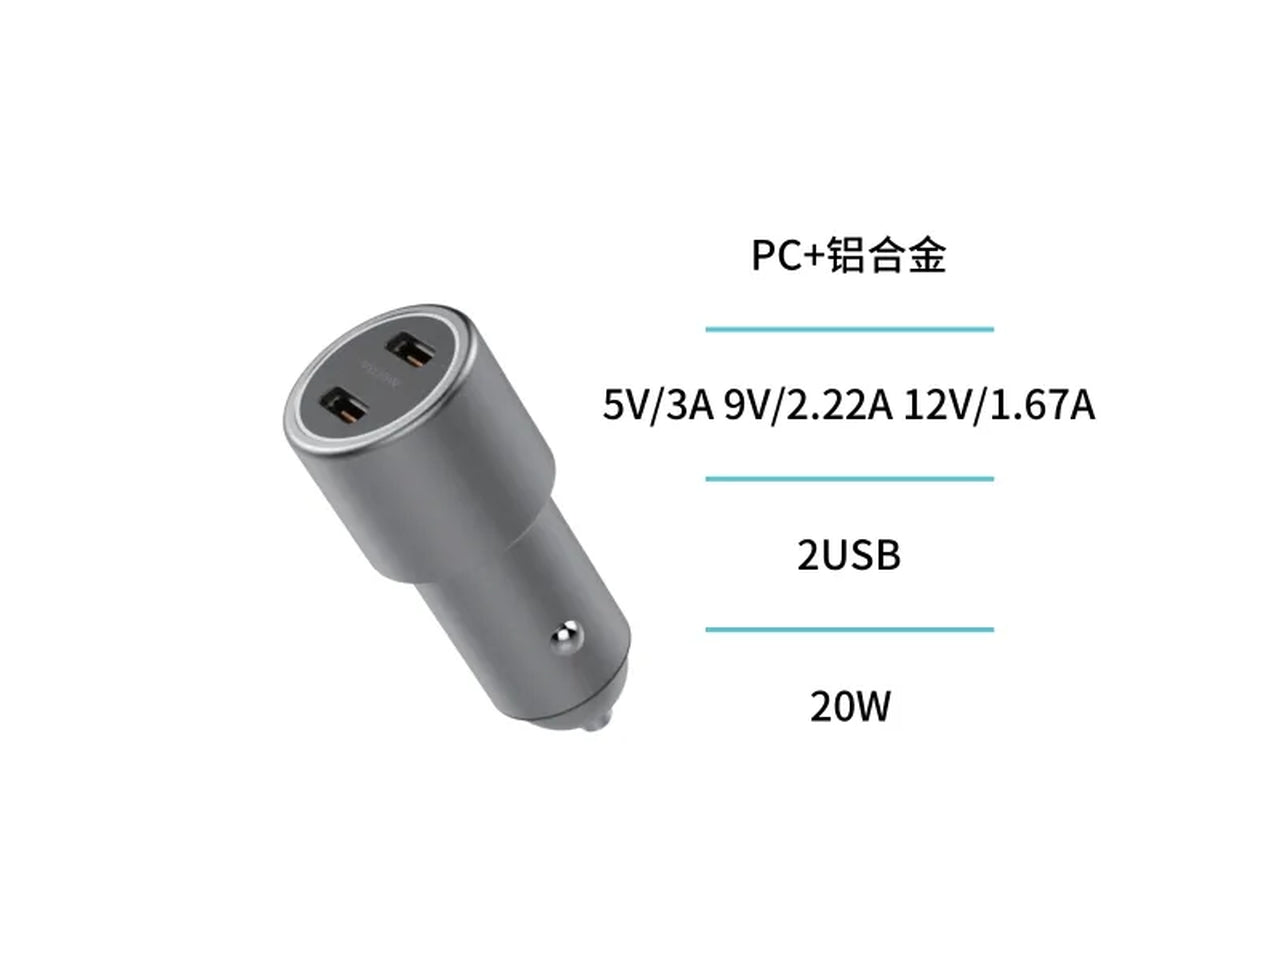 Caricabatteria per auto grigio 2 USB, potenza 20W, CC1496 - Unico